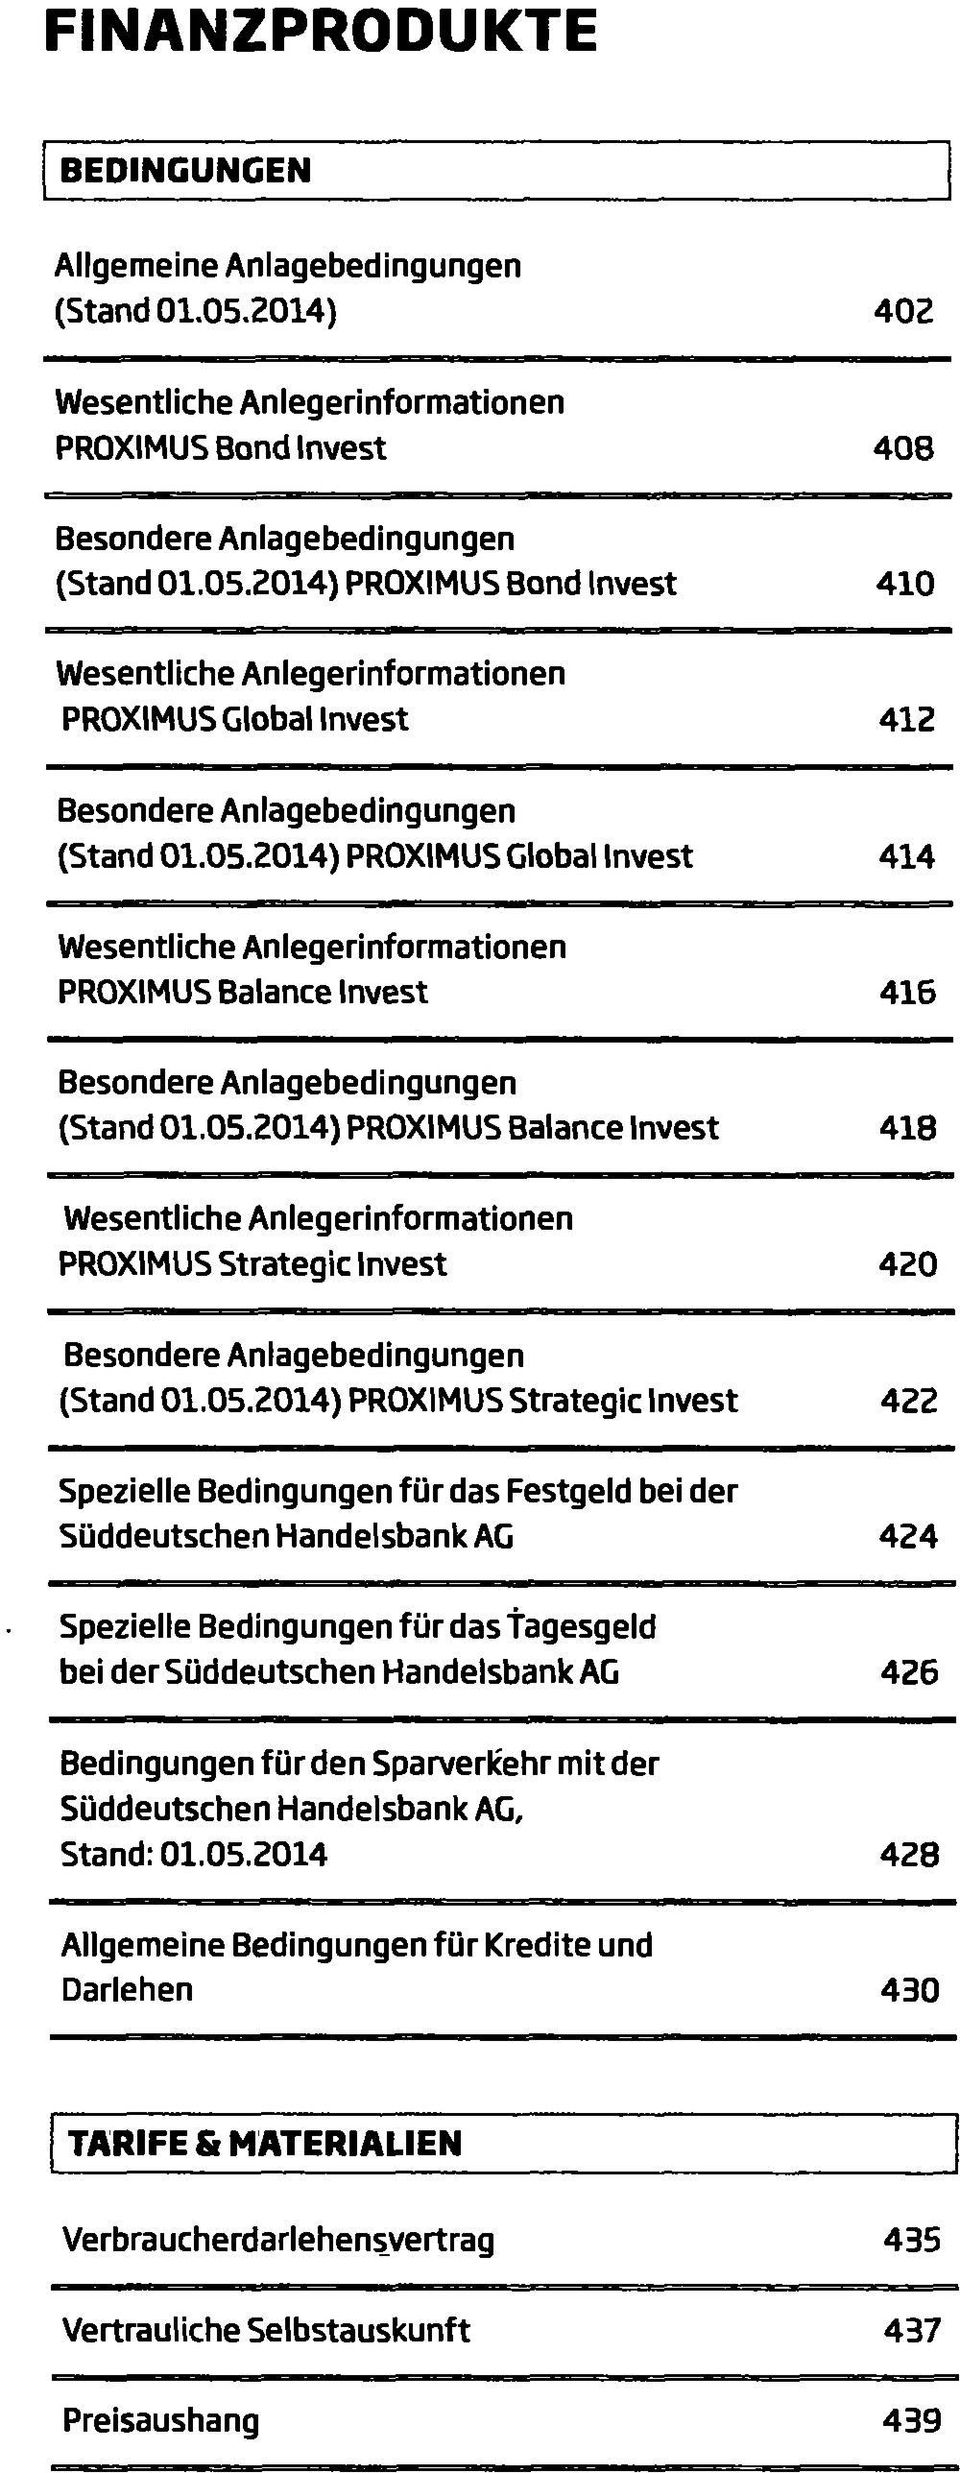 Handelsbank AG 424 Spezielle Bedingungen für das tagesgeld bei der Süddeutschen Handelsbank AG 426 Bedingungen für den Sparverkehr mit der Süddeutschen Handelsbank AG, Stand: 01.05.